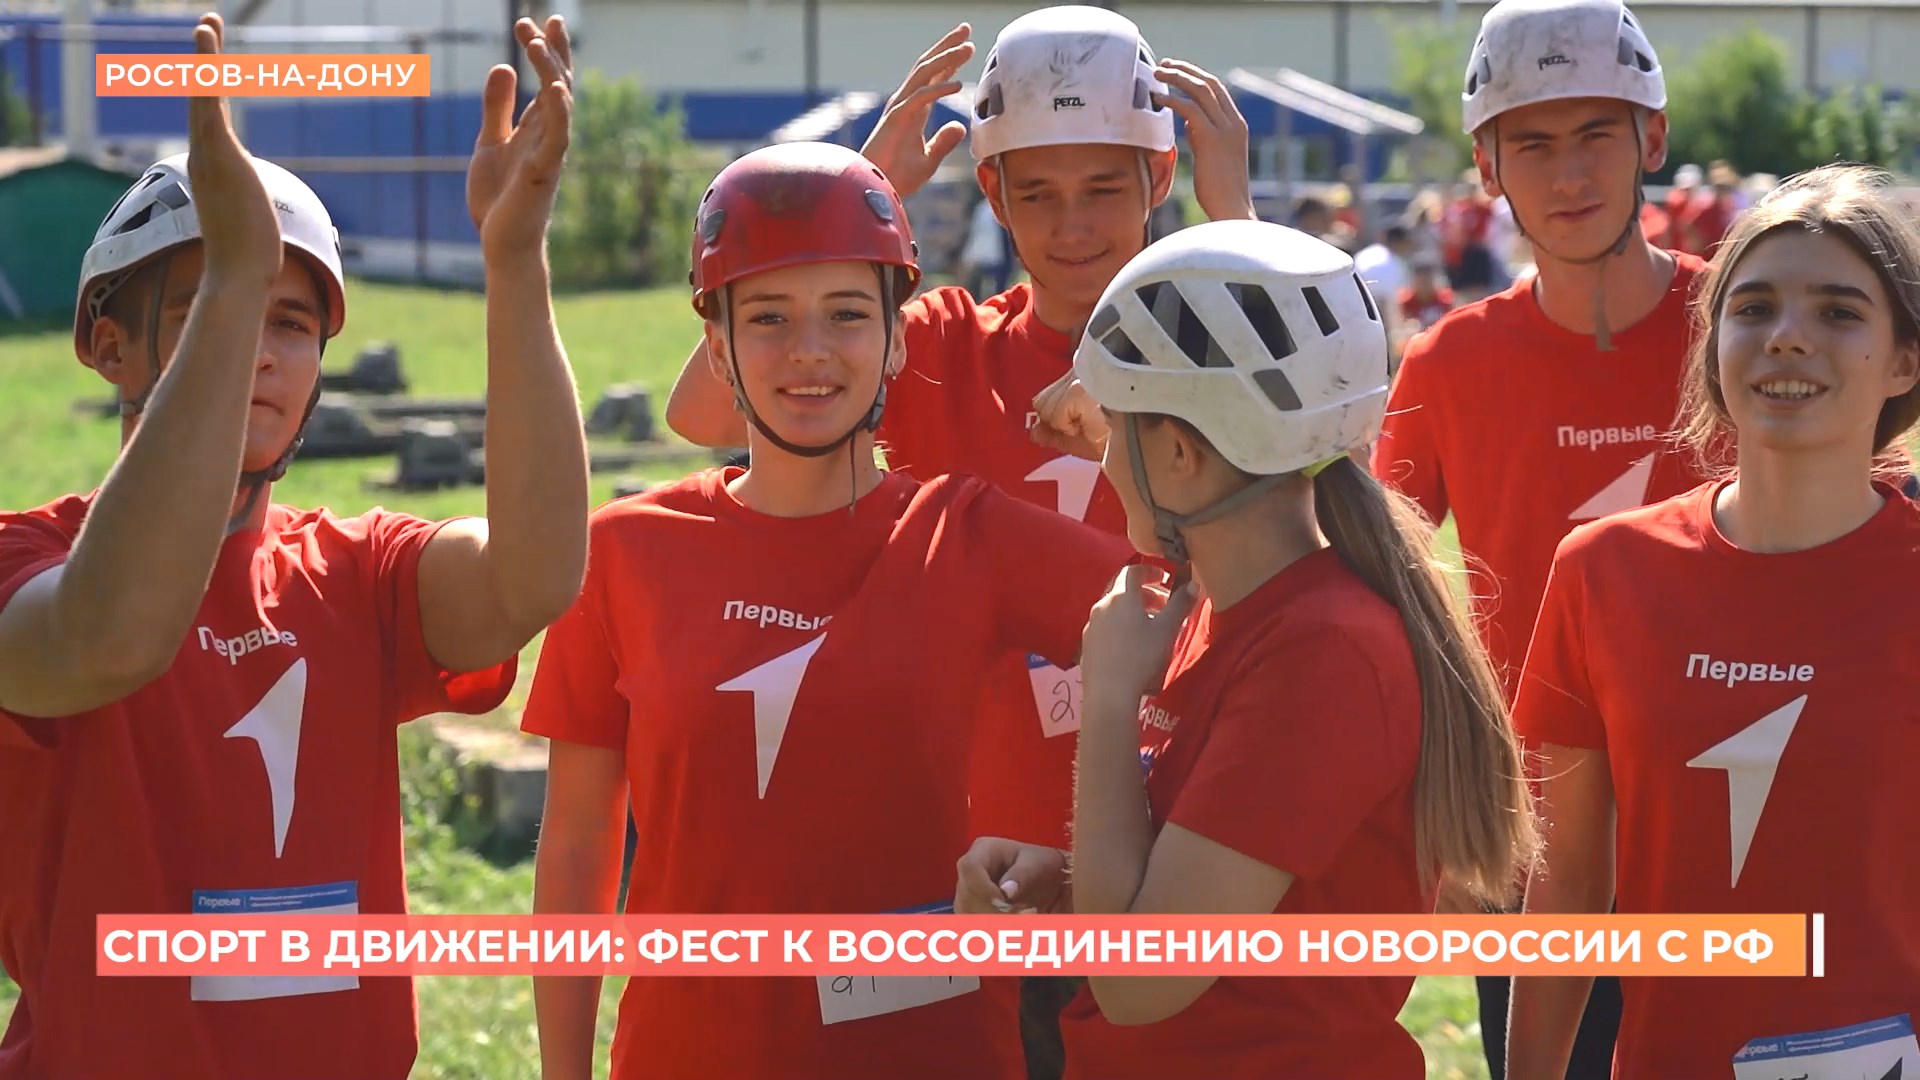 Спорт в движении: в Ростове прошел фестиваль к воссоединению Новороссии с Россией